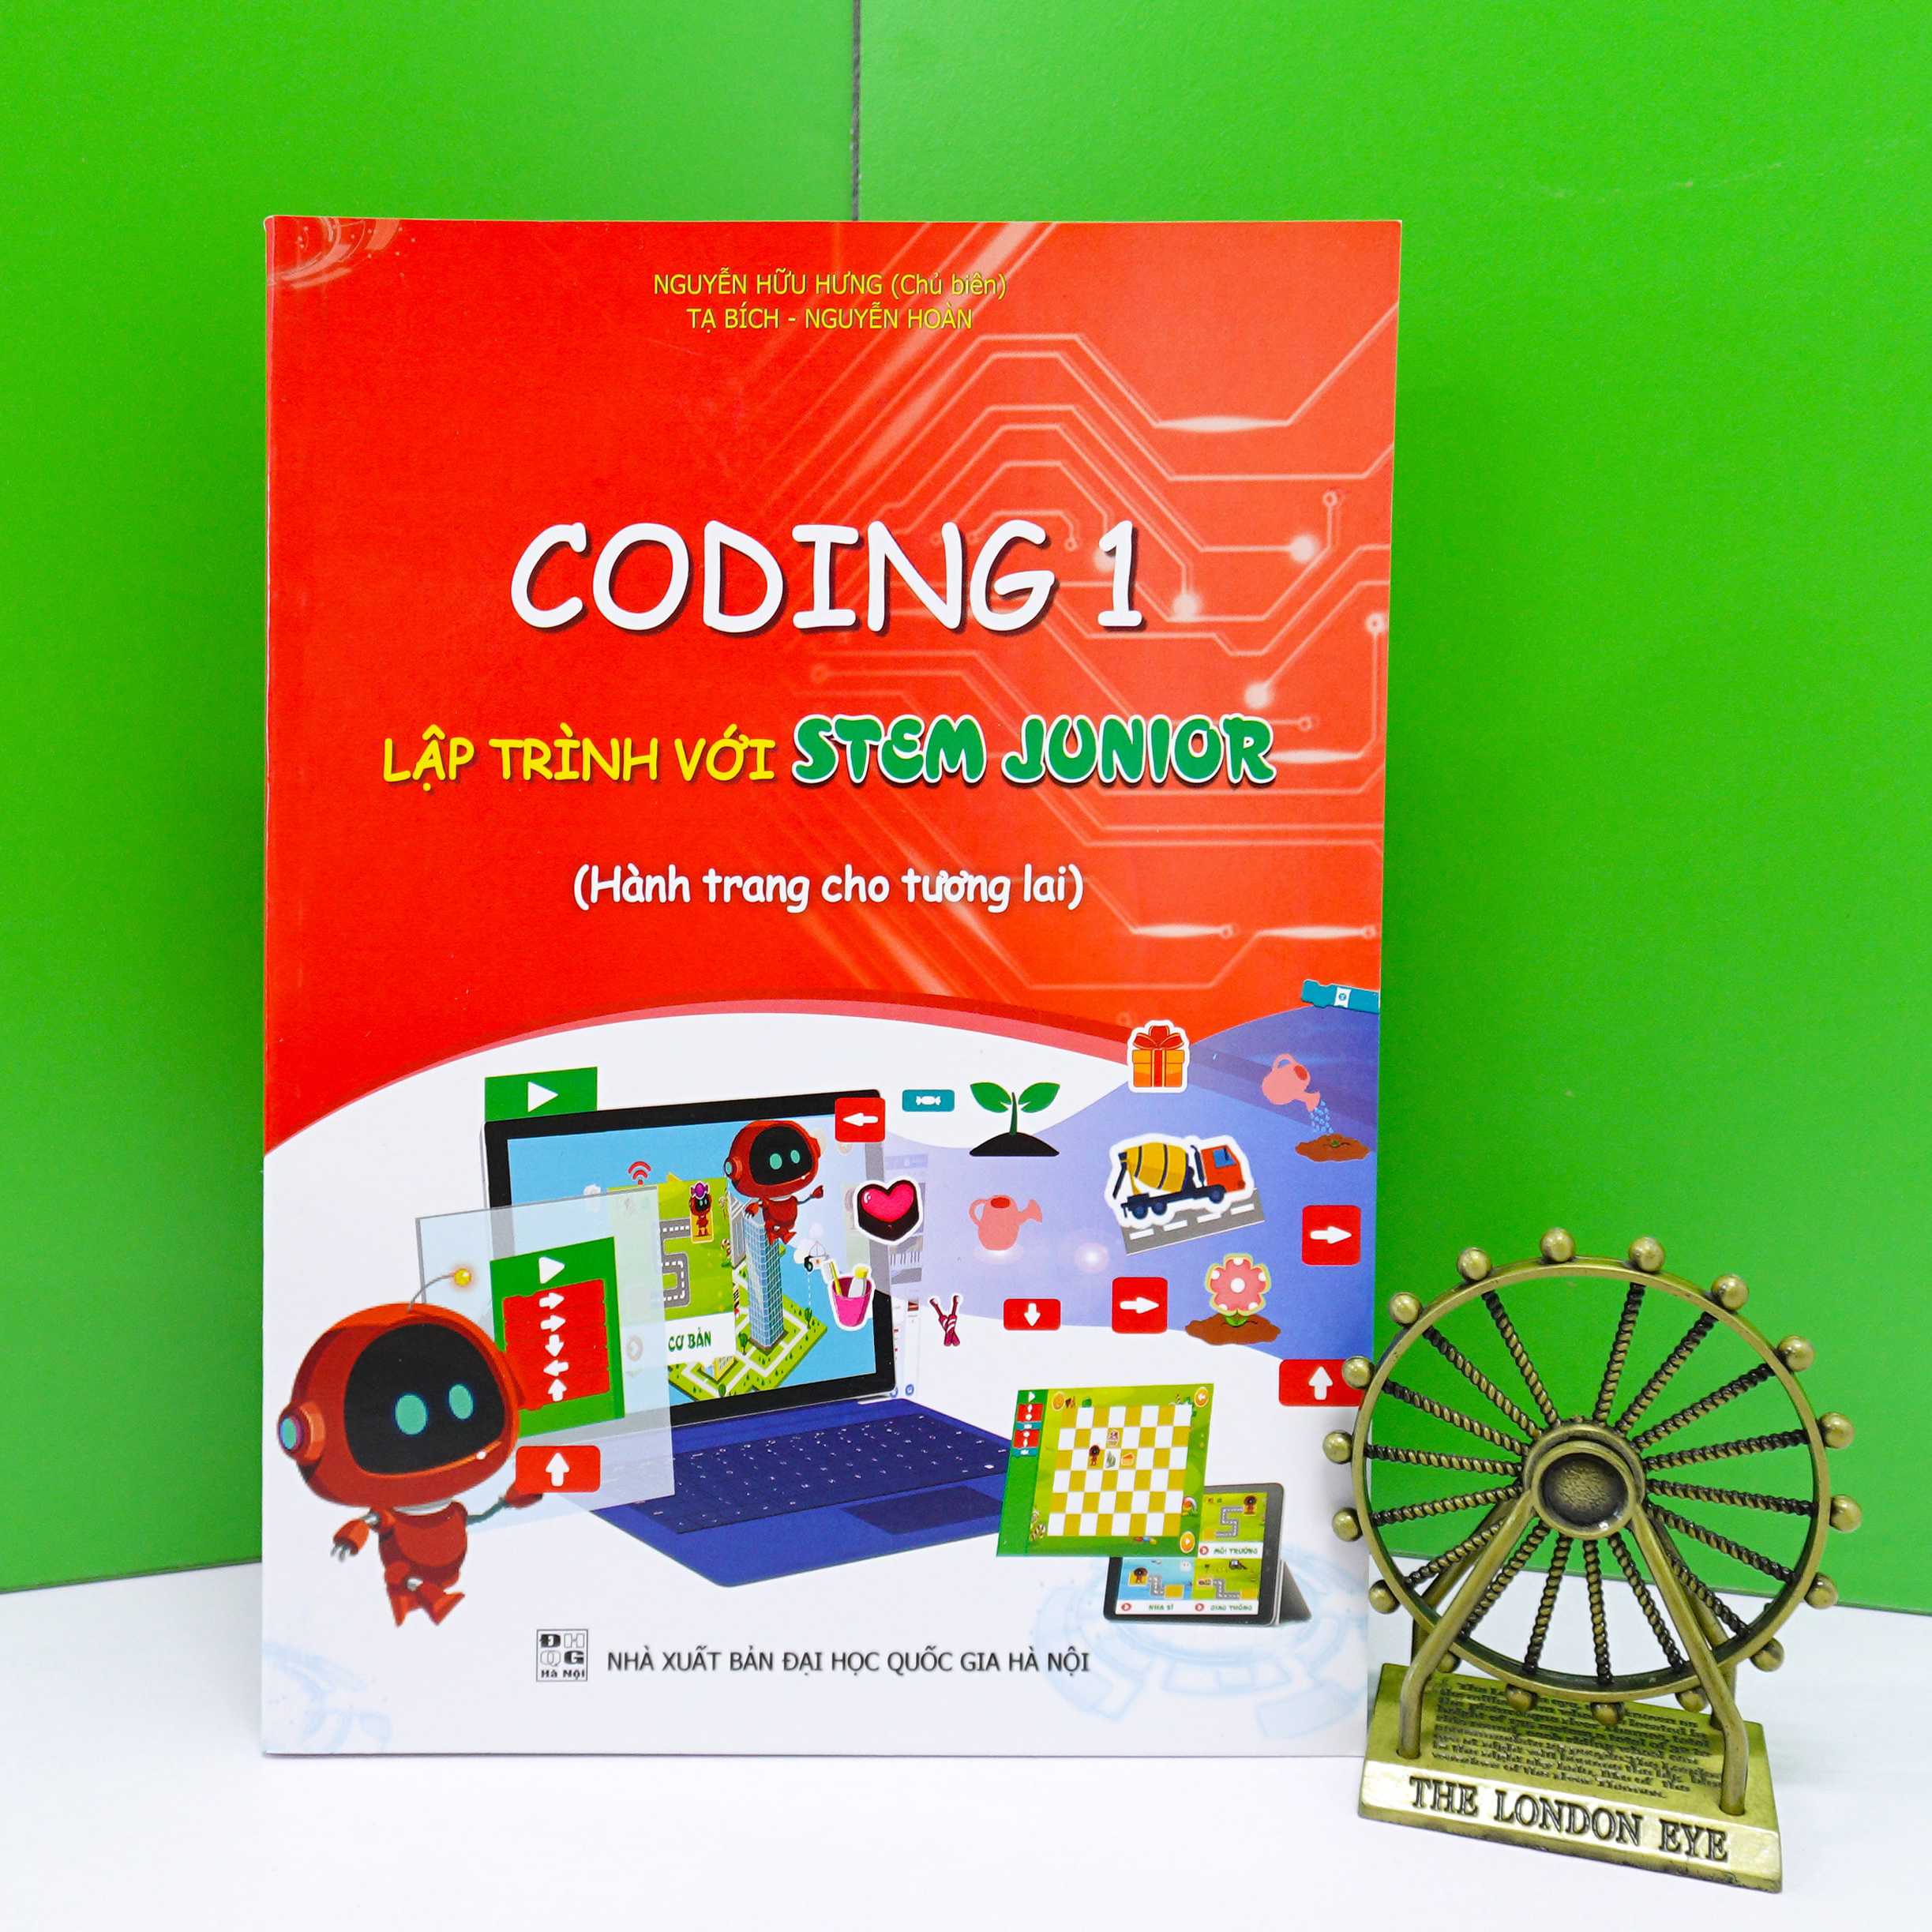 Bộ sách kèm ứng dụng lập trình cho học sinh từ 4 - 7 tuổi (Lập trình với STEM JUNIOR)